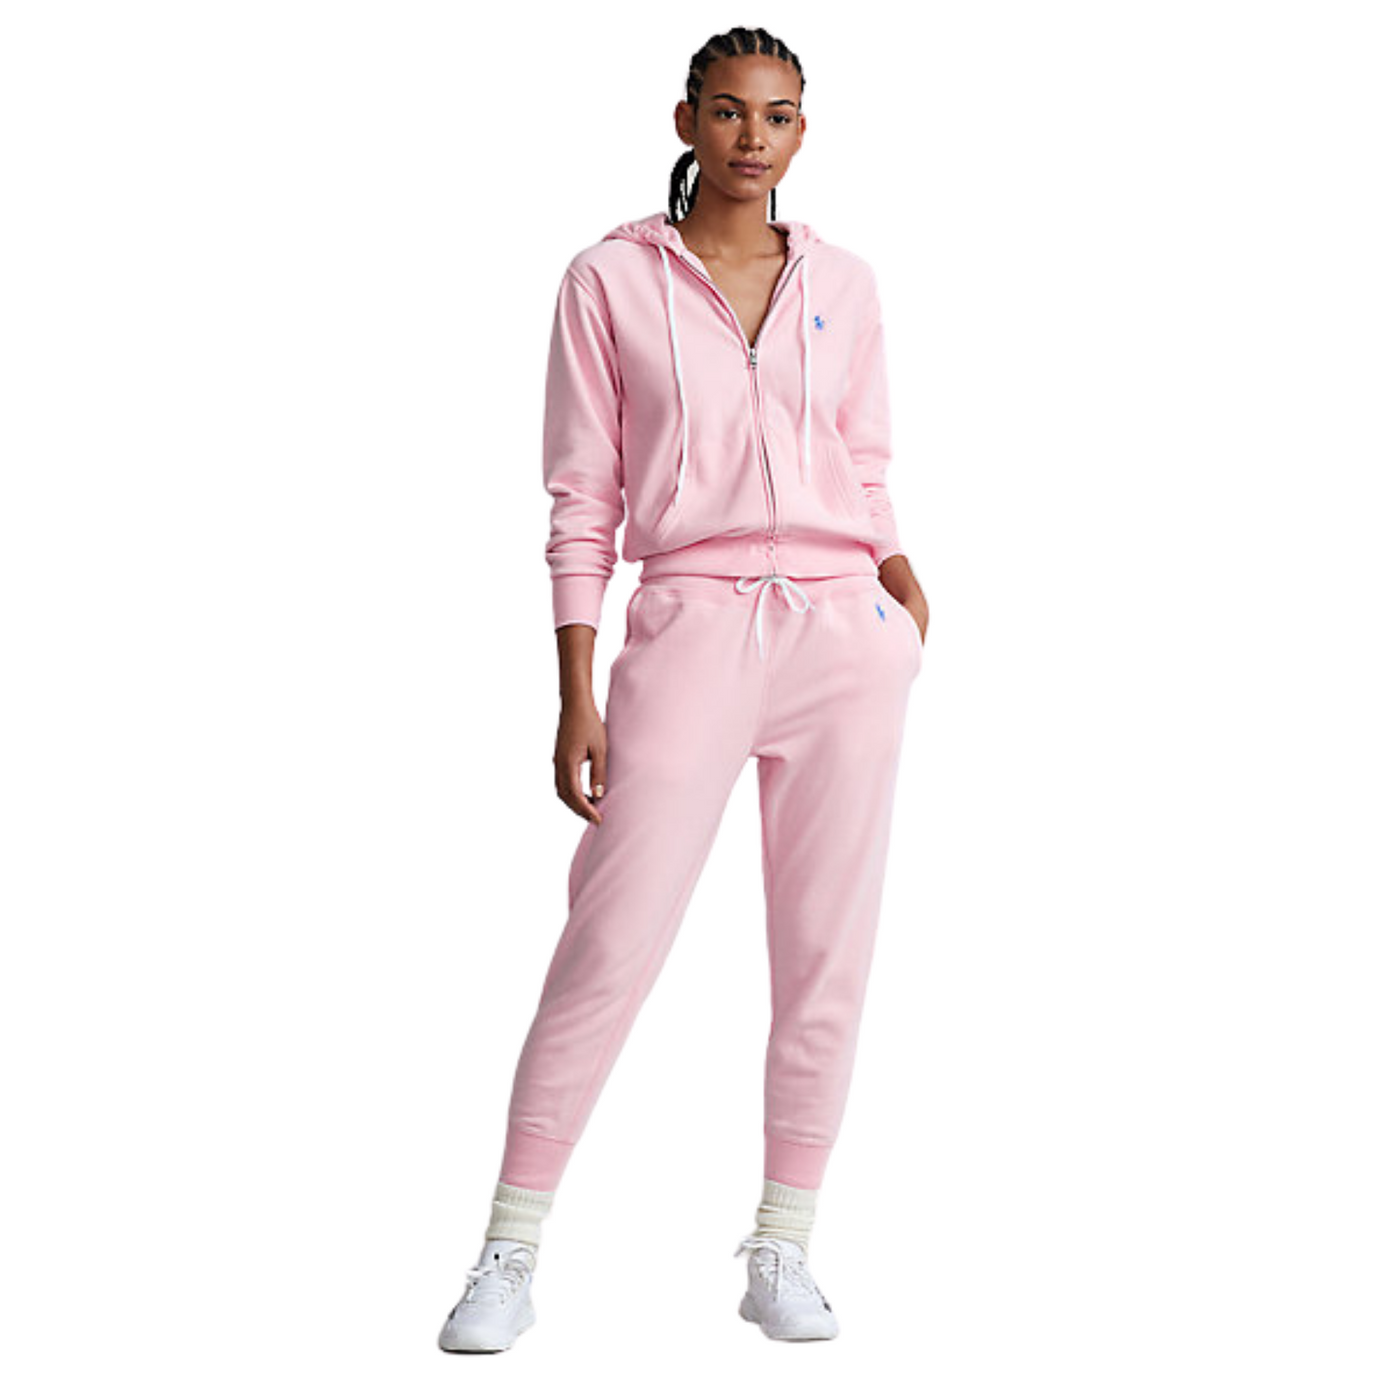 Pantaloni di tuta rosa con coulisse in vita e logo brand frontale a contrasto.